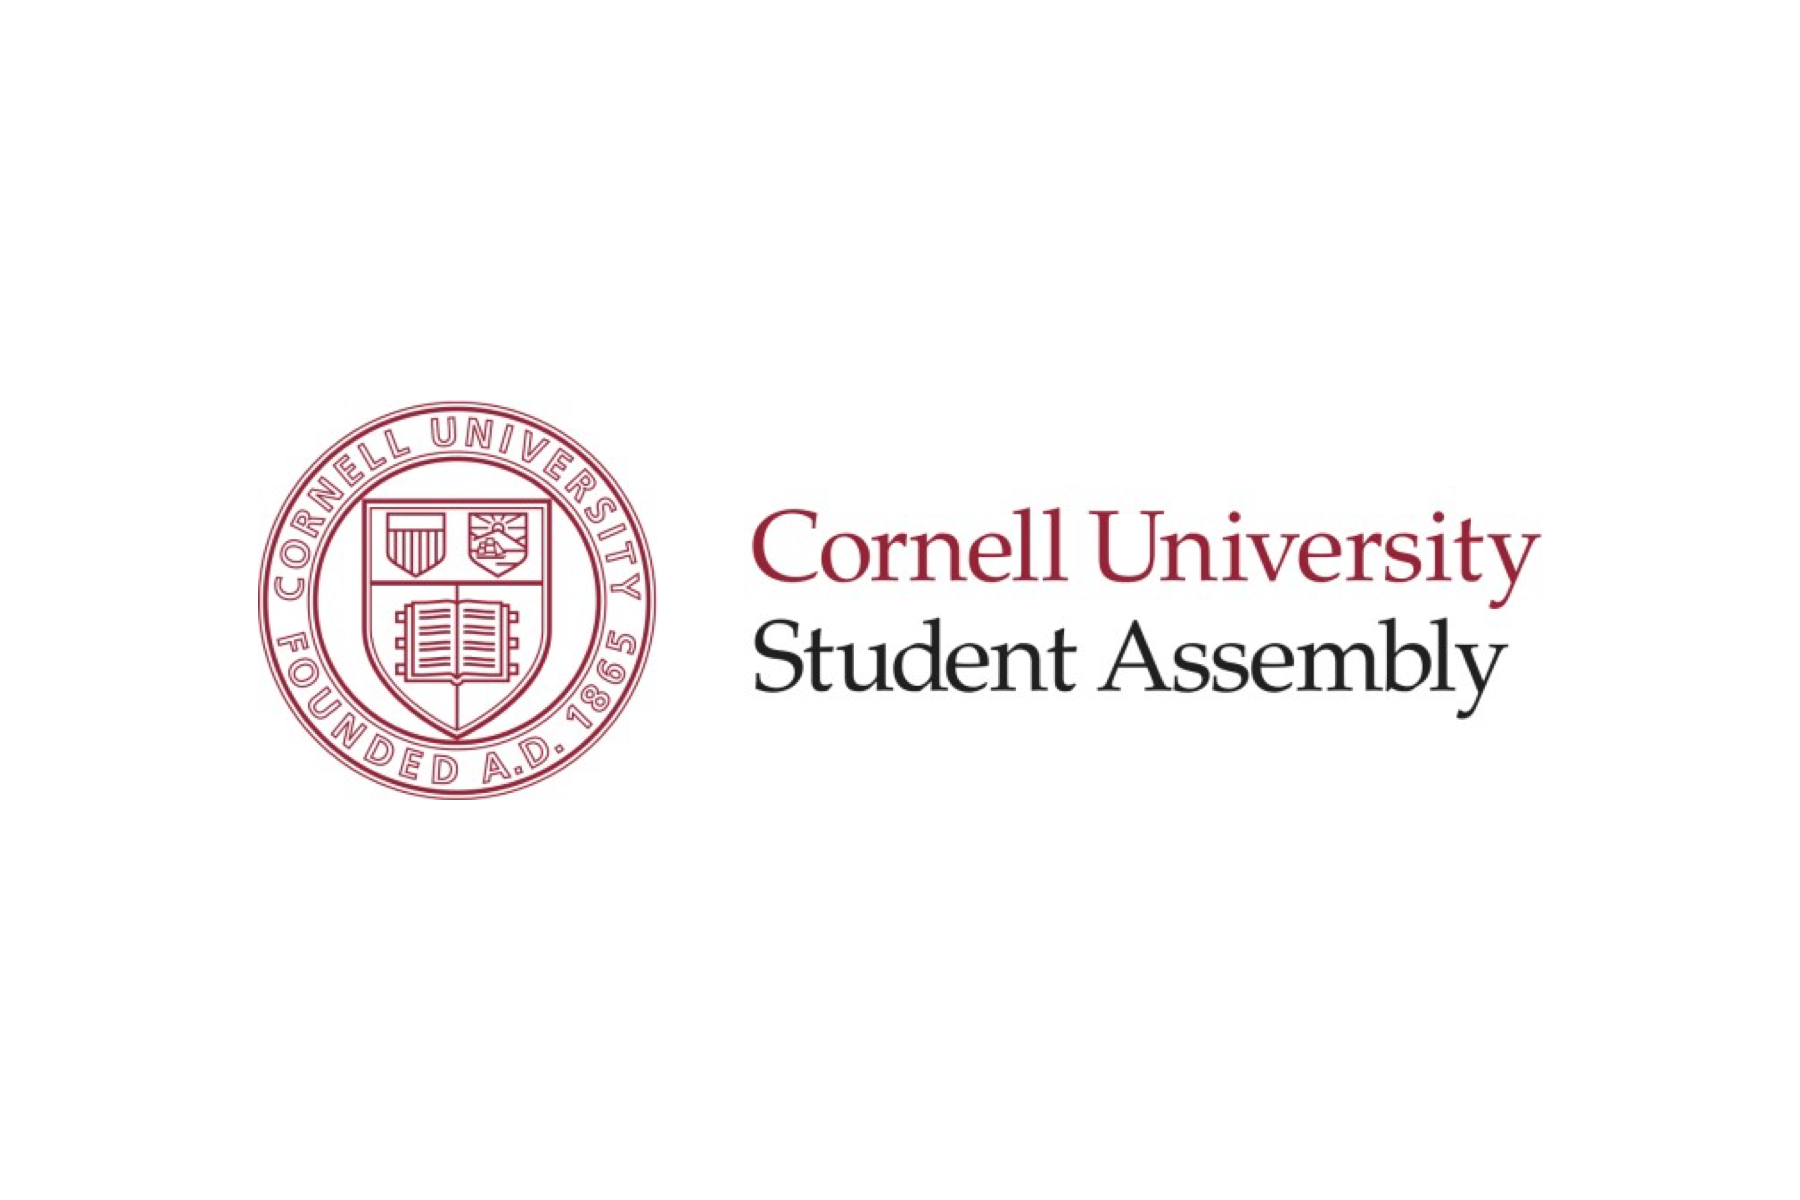 Cornell University Student Assembly